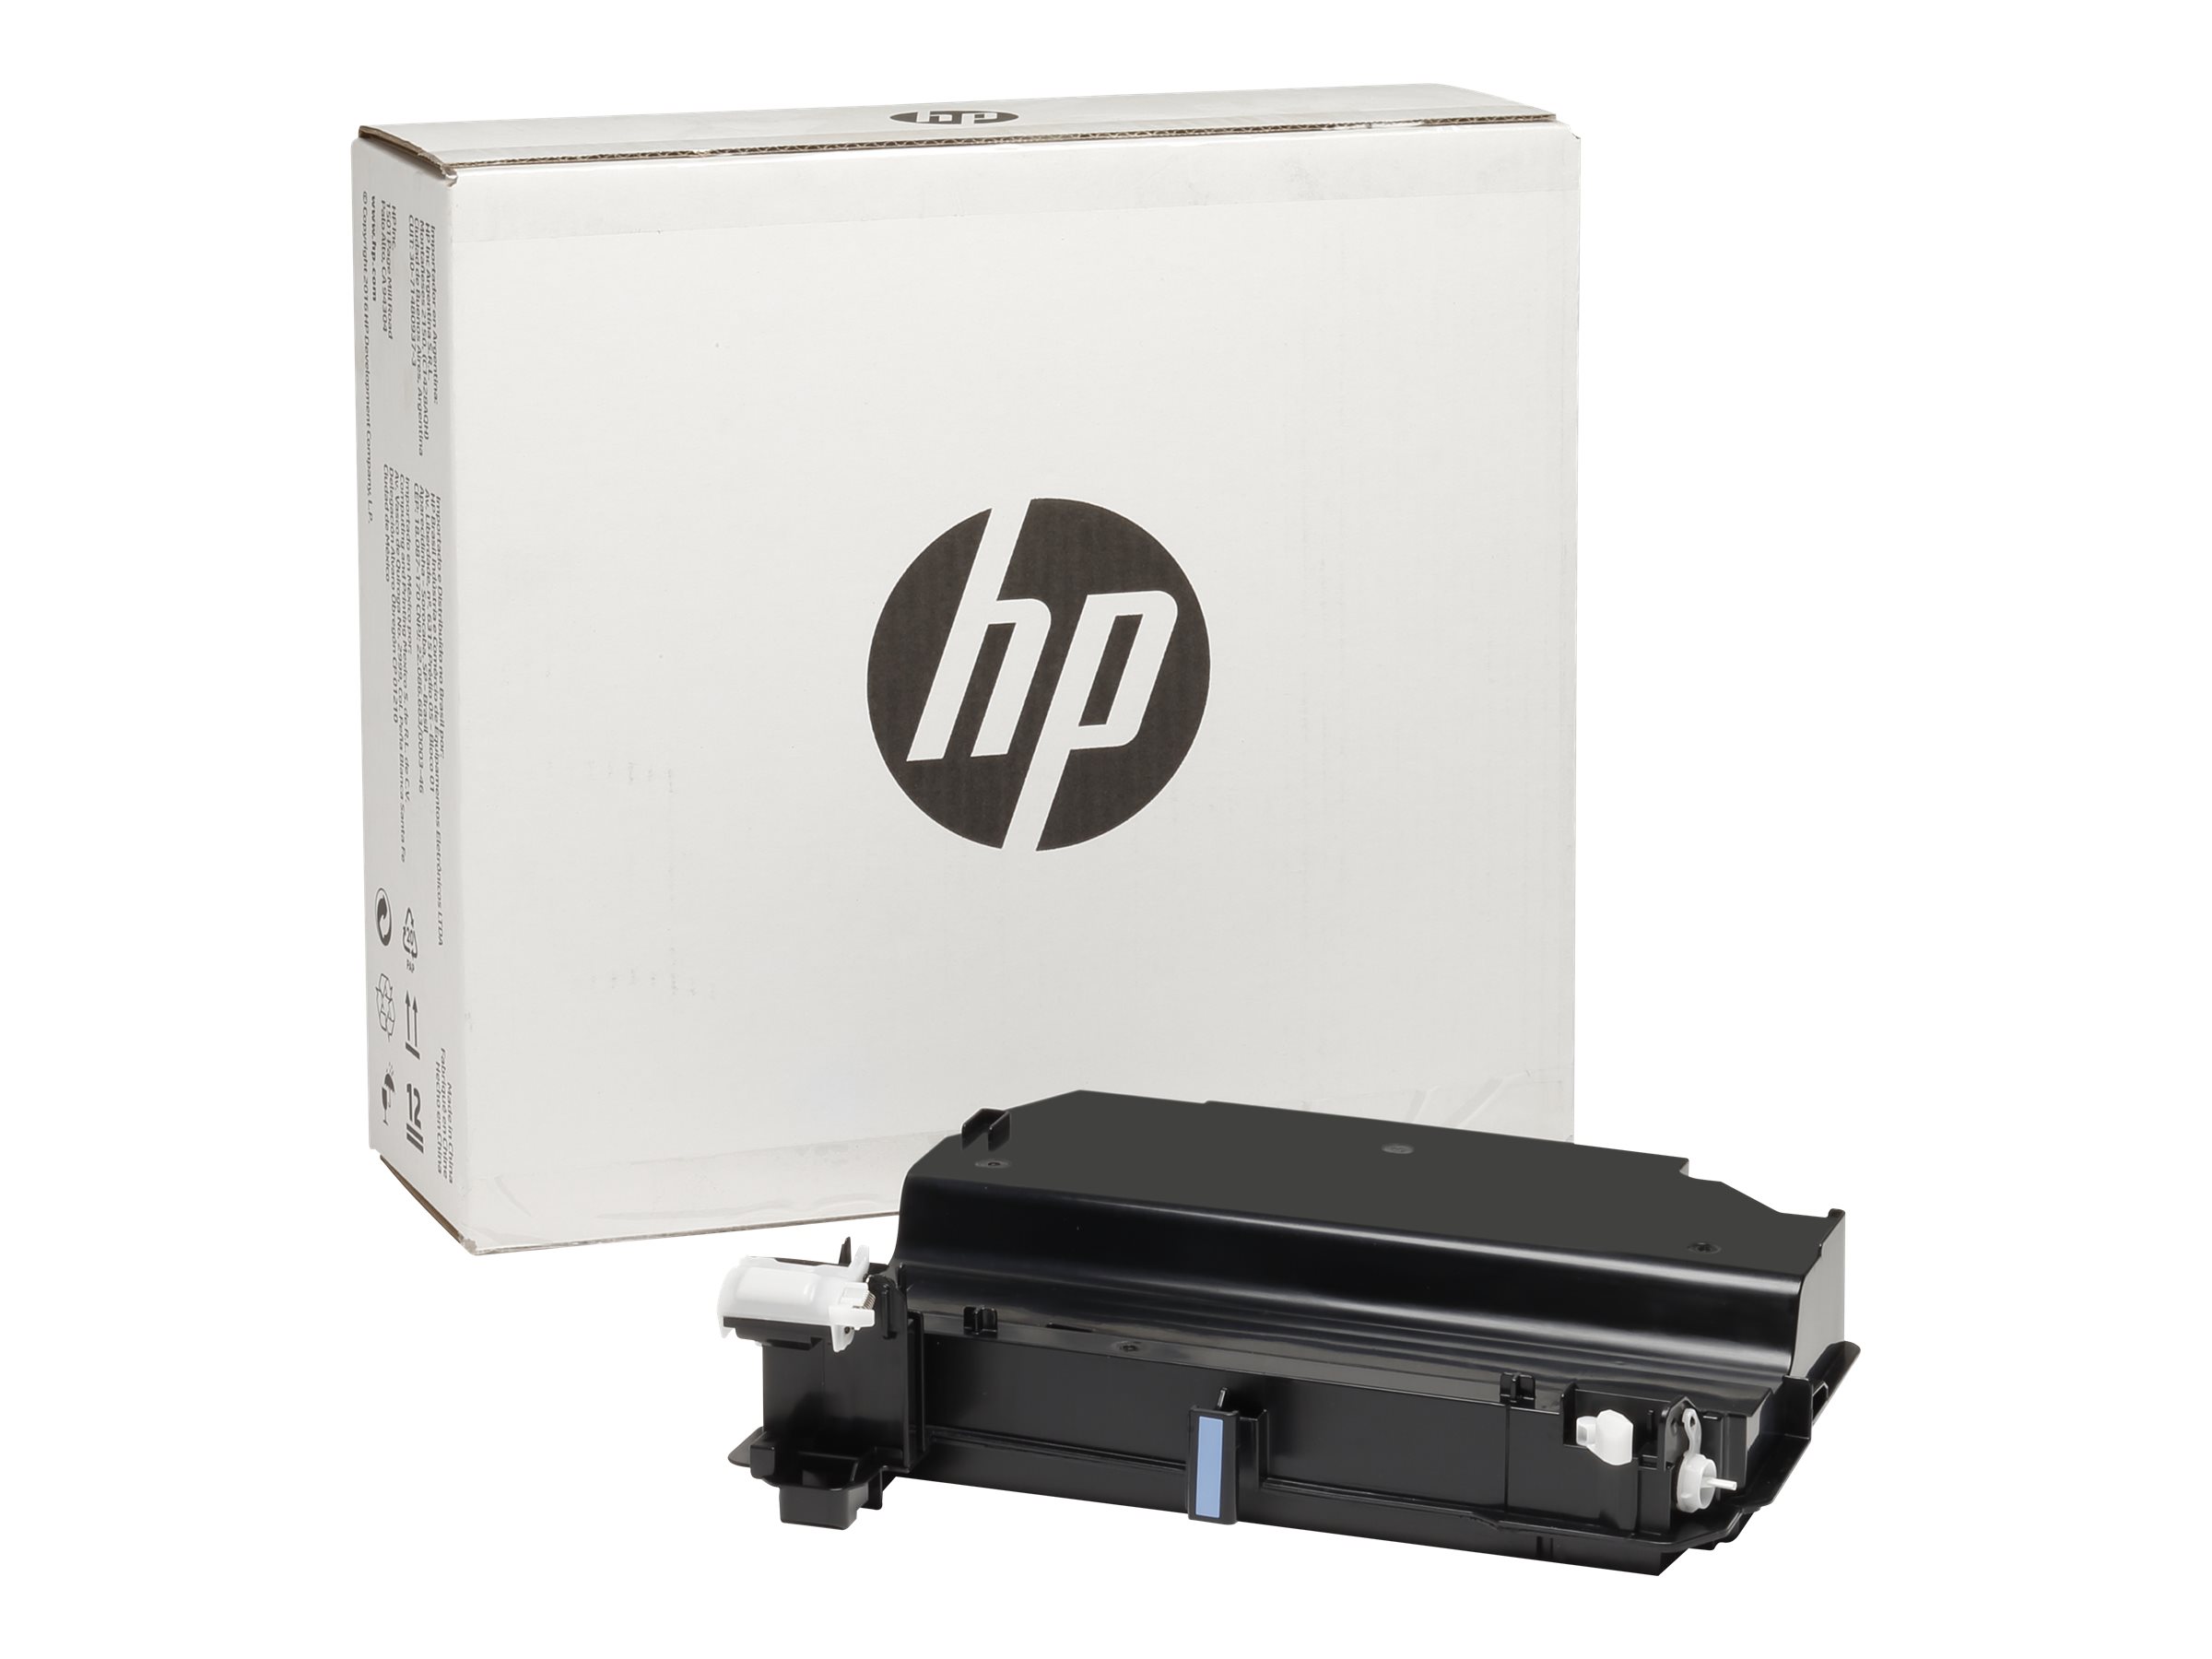 HP - LaserJet - waste toner collector